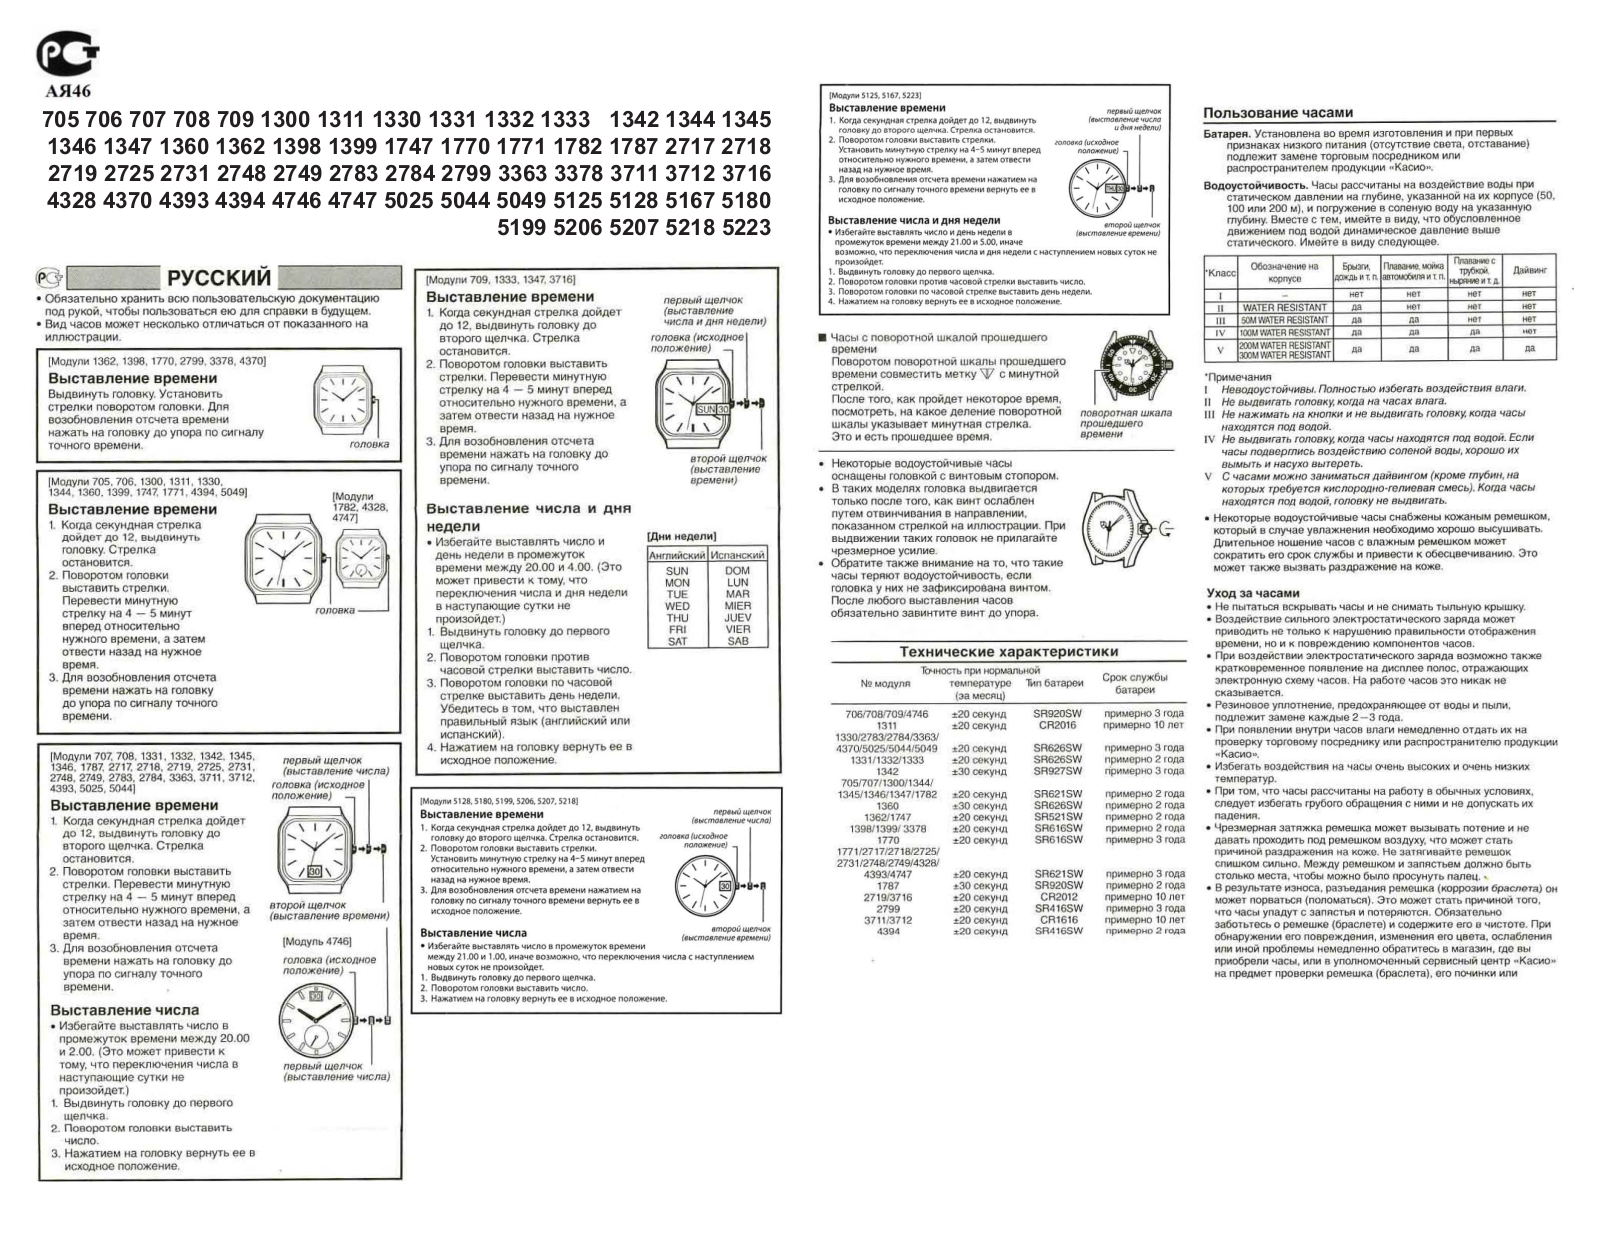 Casio 1342 User Manual